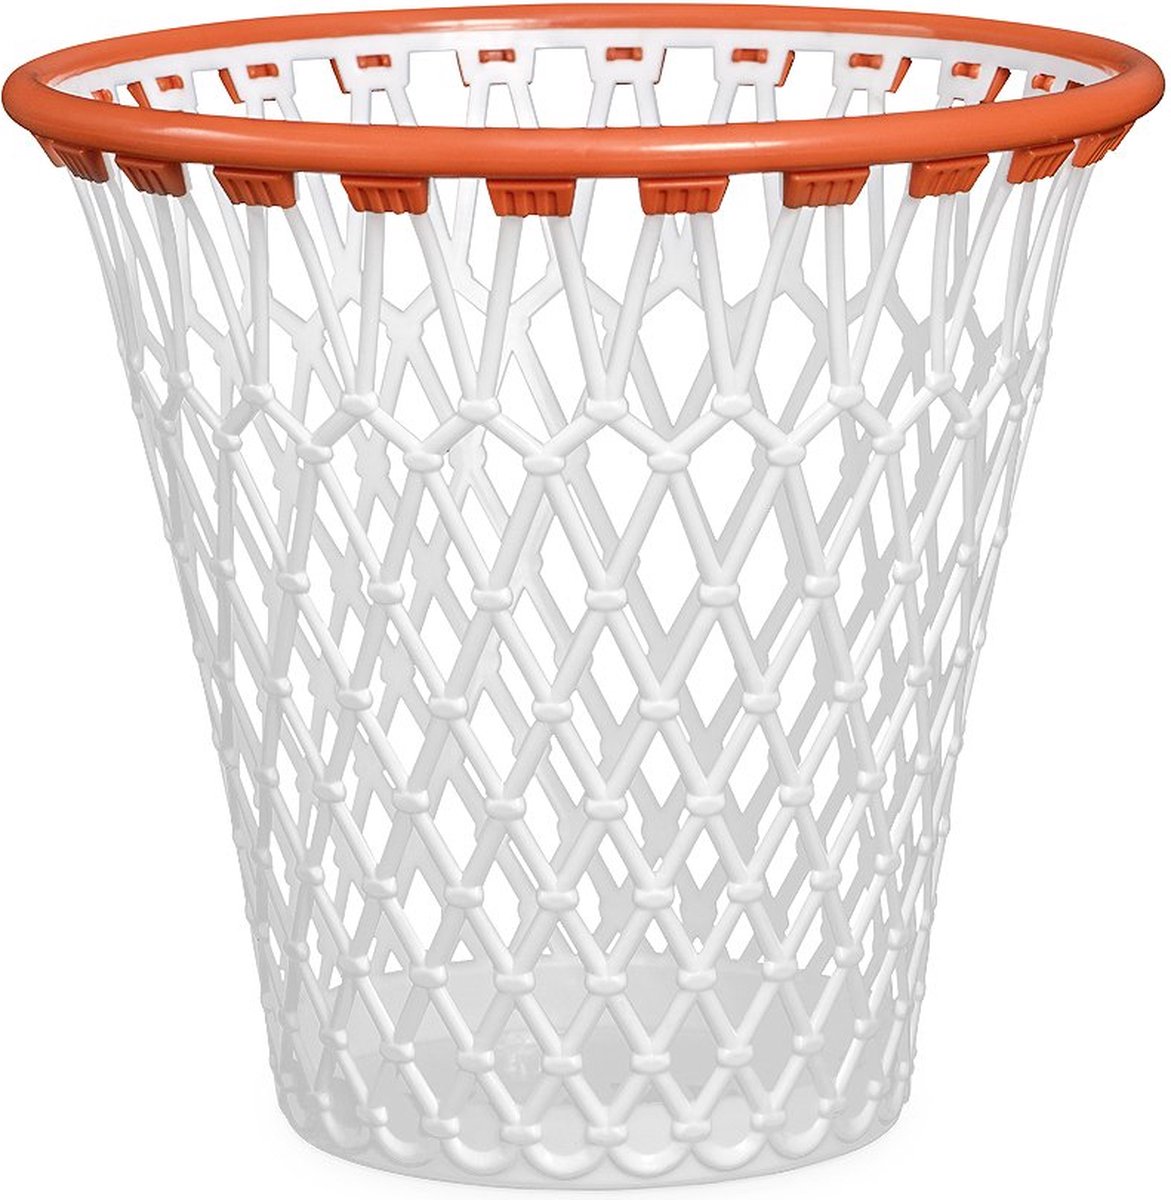 Basket prullenmand. Met de grappige look van een basketbalmand. Kleur: wit. Gemaakt van